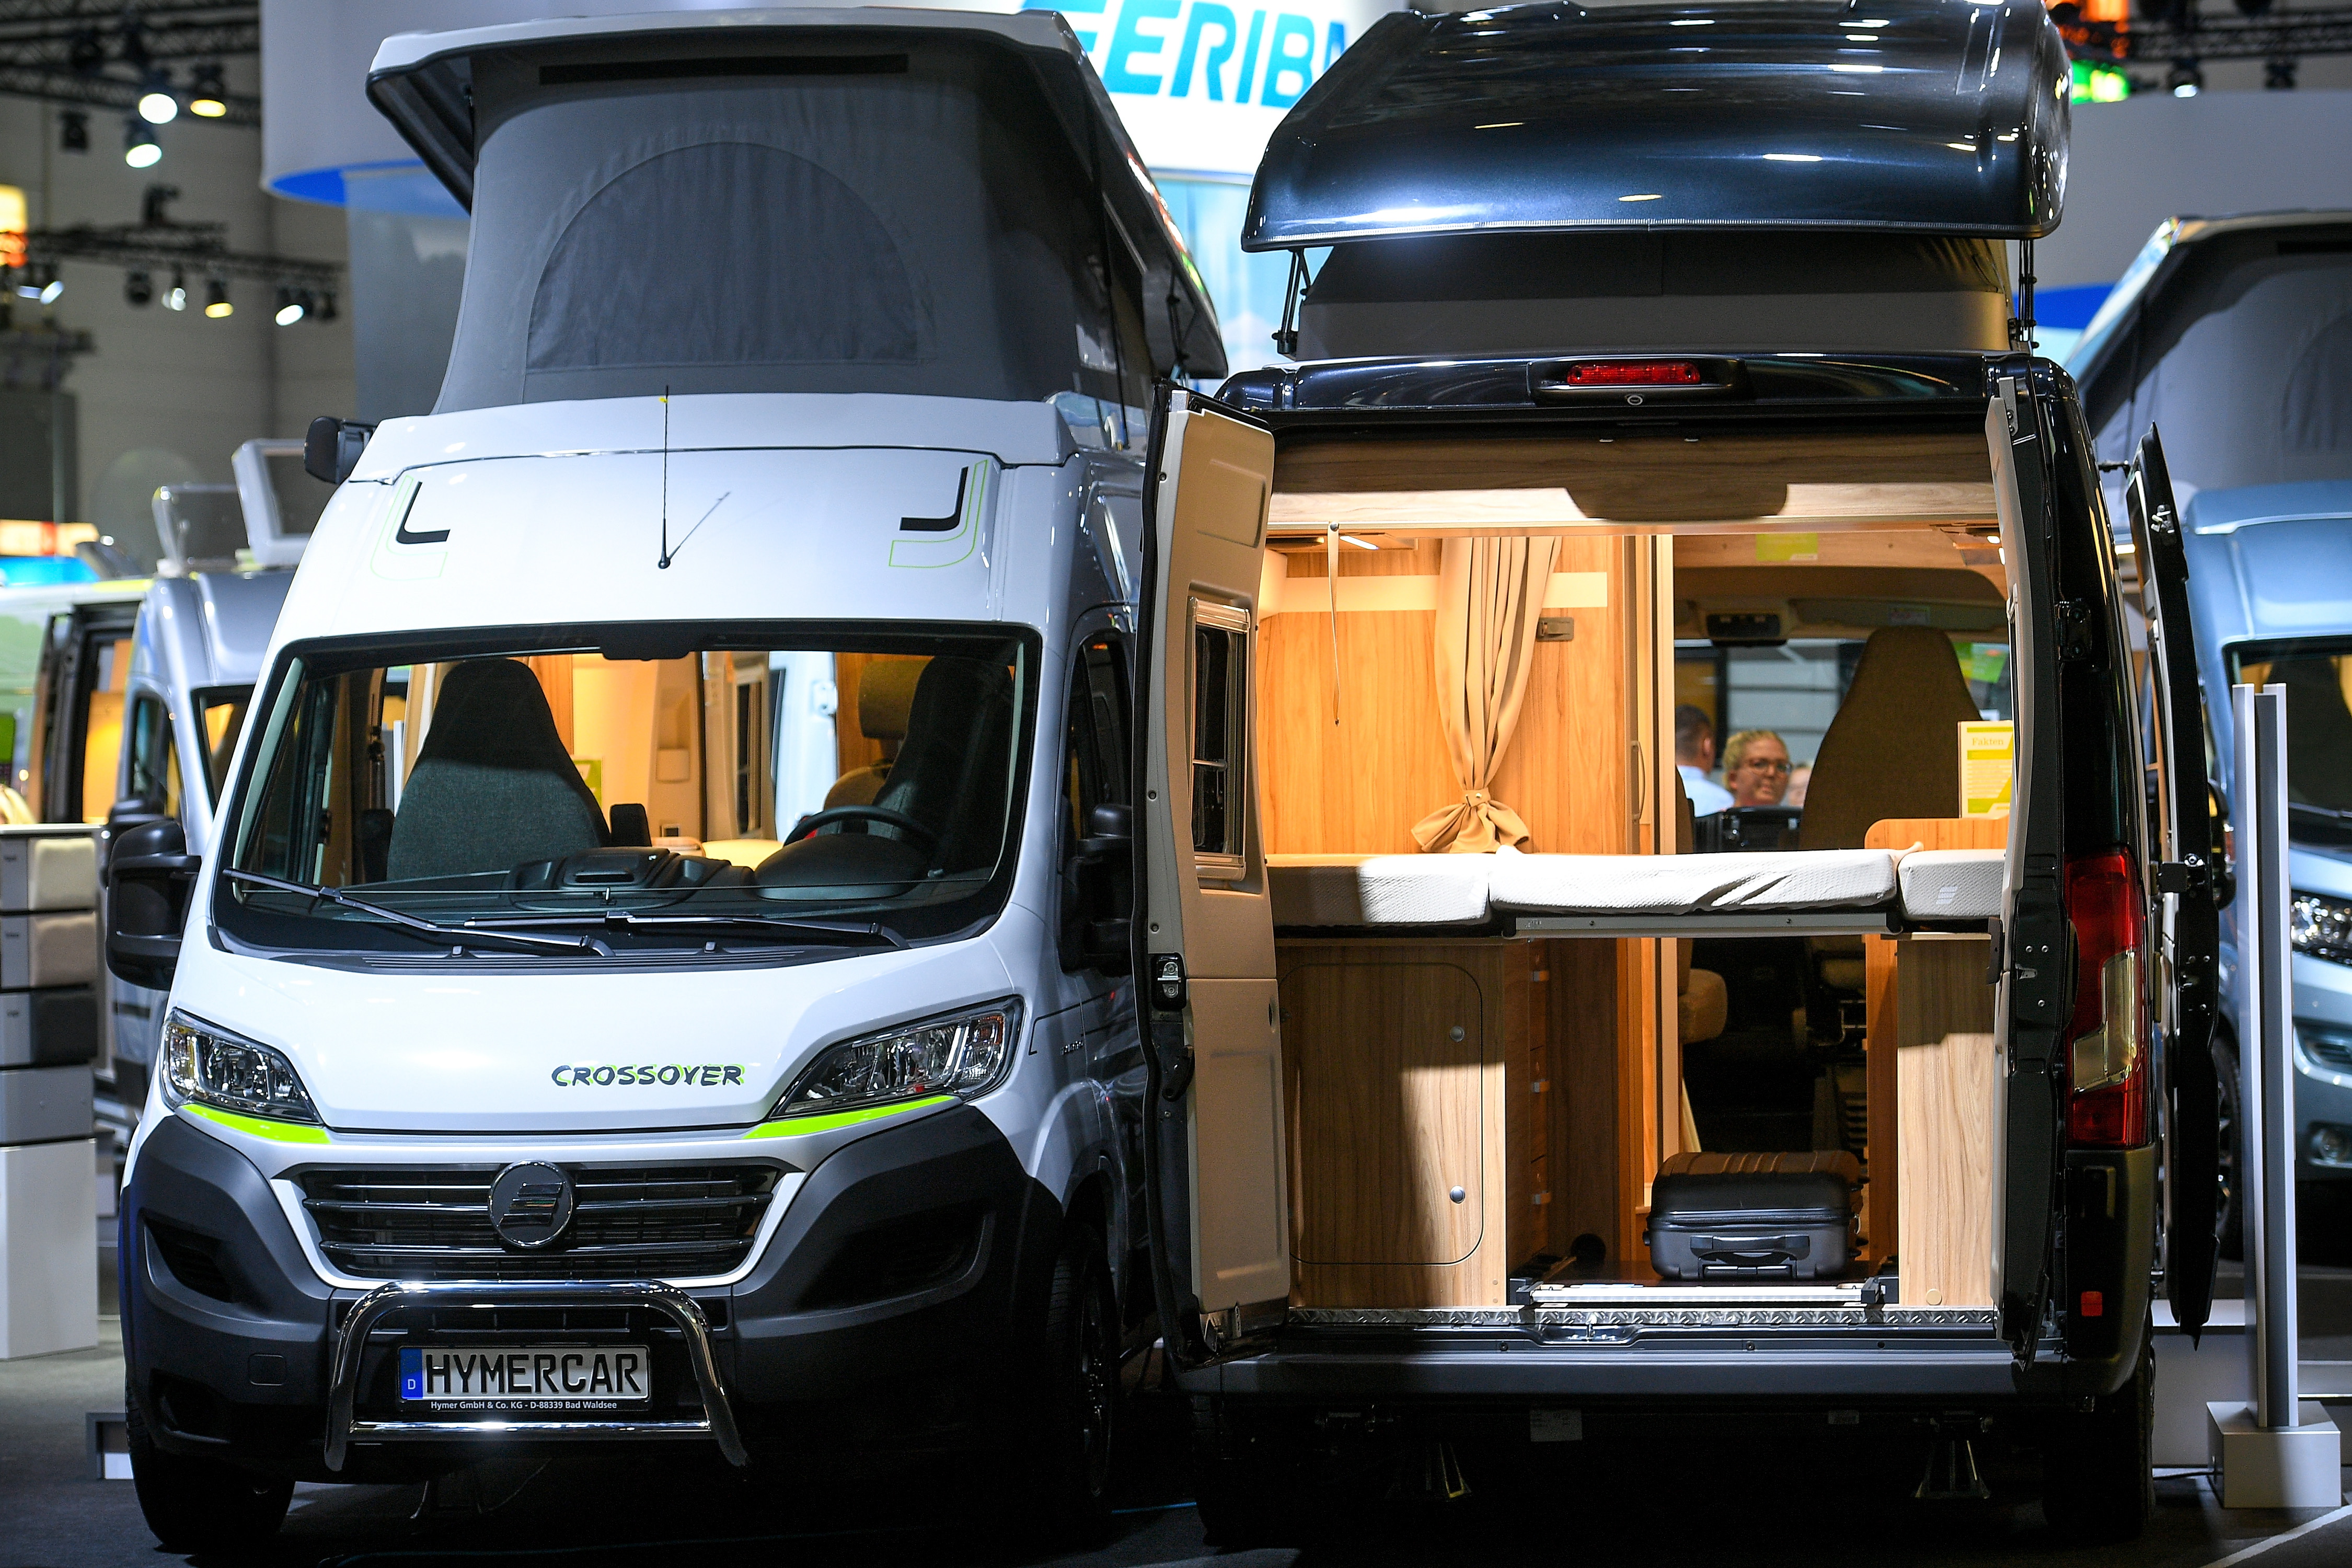 "Caravan Salon" от 24 август до 2 септември 2018 г. събира международния сектор за каравани и кемпъри за представяне на най-новите си разработки и продукти. За първи път в историята на панаира, посетителите могат да разгледат най-голямото световно изложение за мобилни почивки в общо 13 изложбени зали в Дюселдорф, Германия.